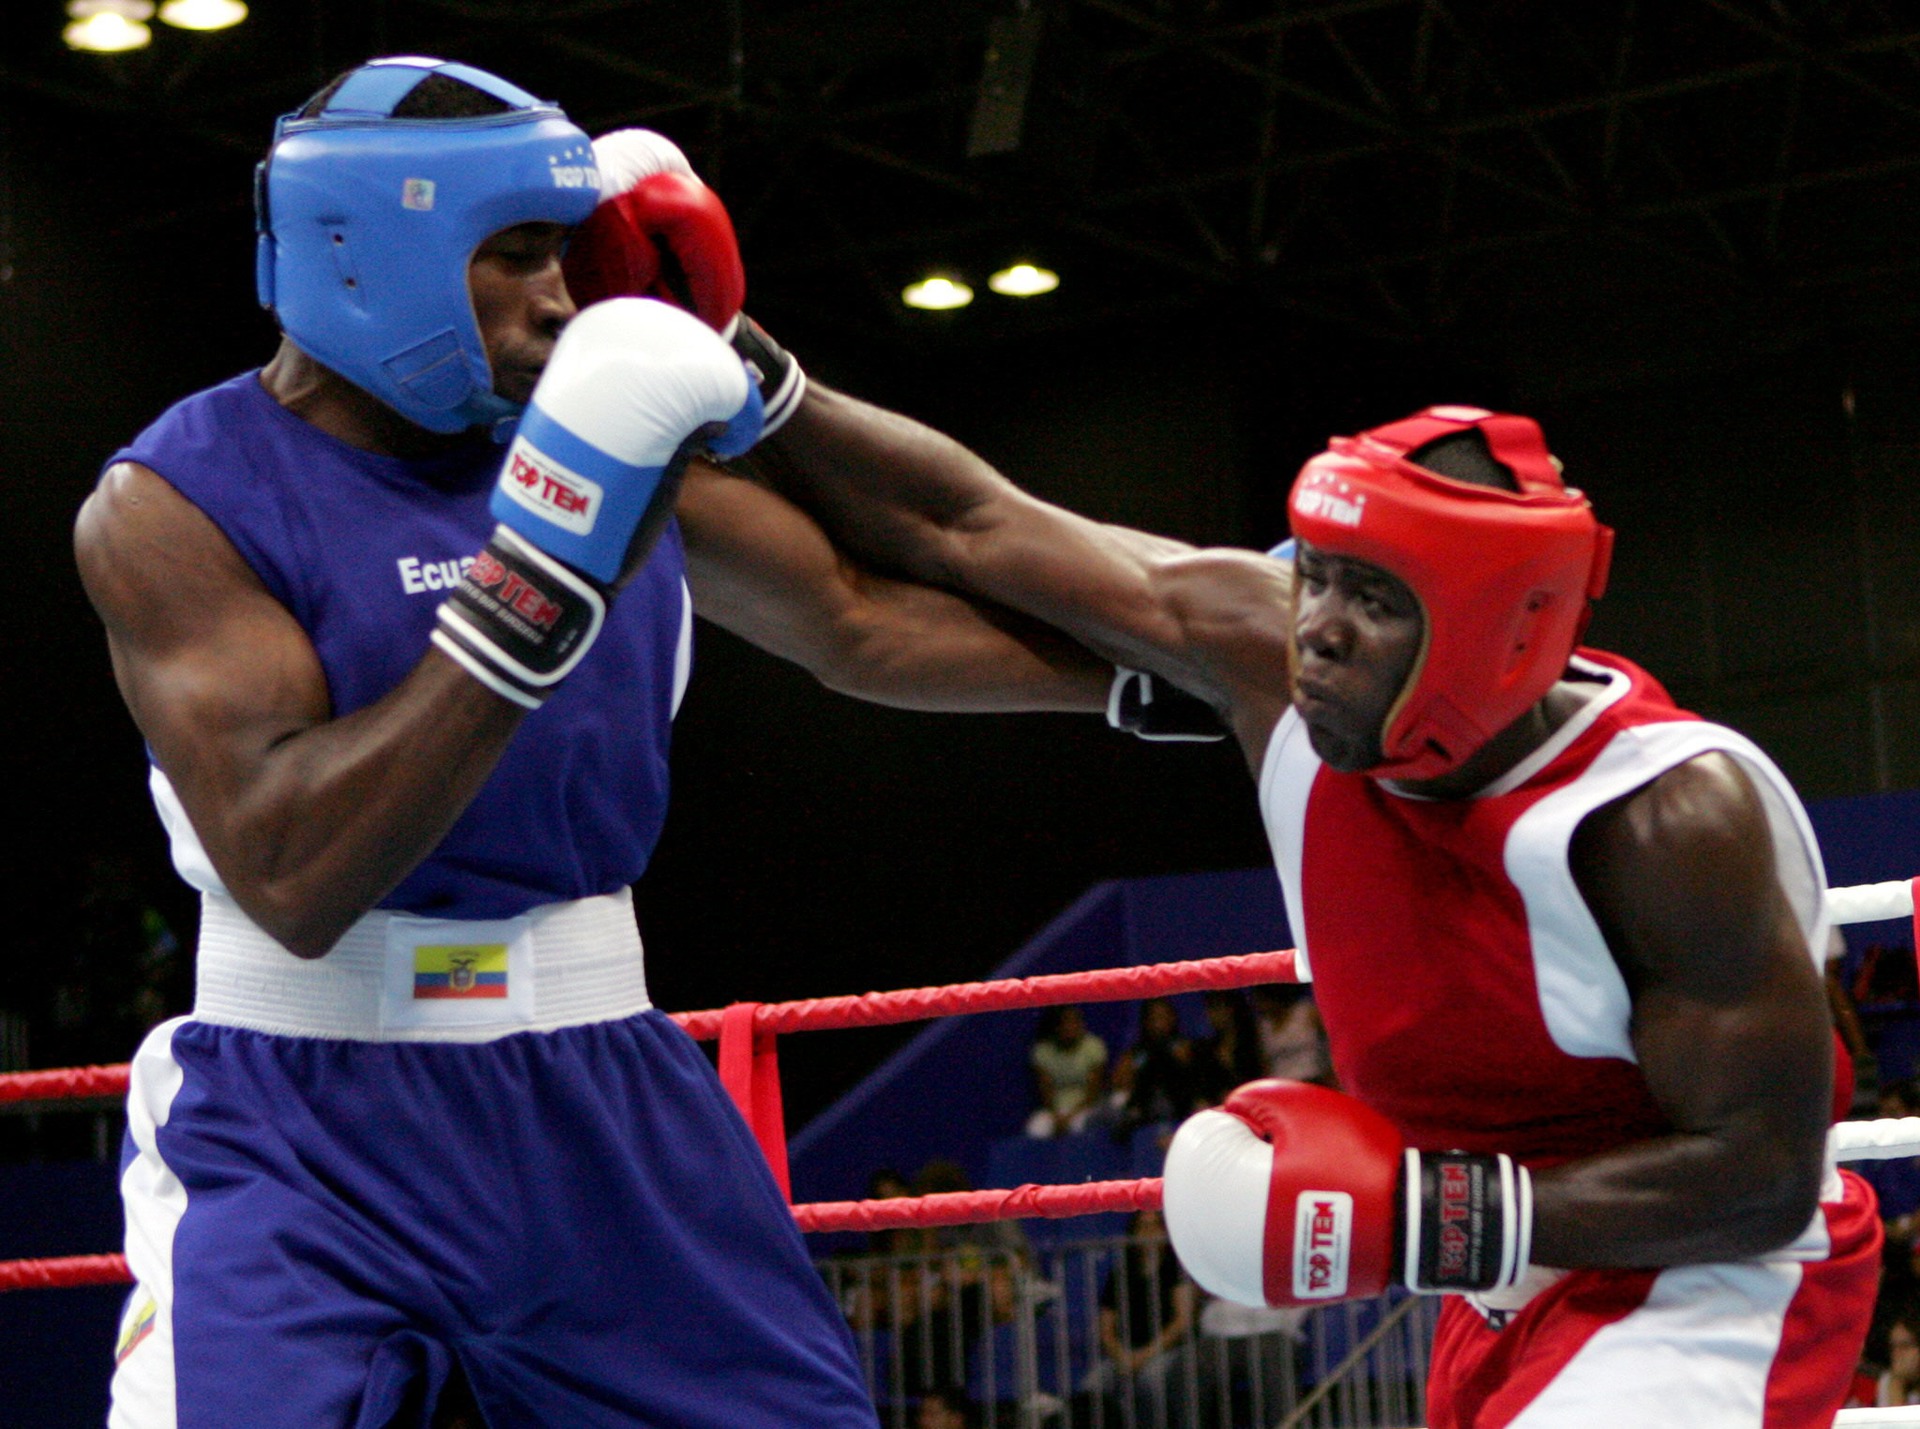 Fotografía de archivo del boxeador ecuatoriano Jorge Quiñonez (i) que se enfrenta al haitiano Azea Agustama. EFE/Iván Franco
